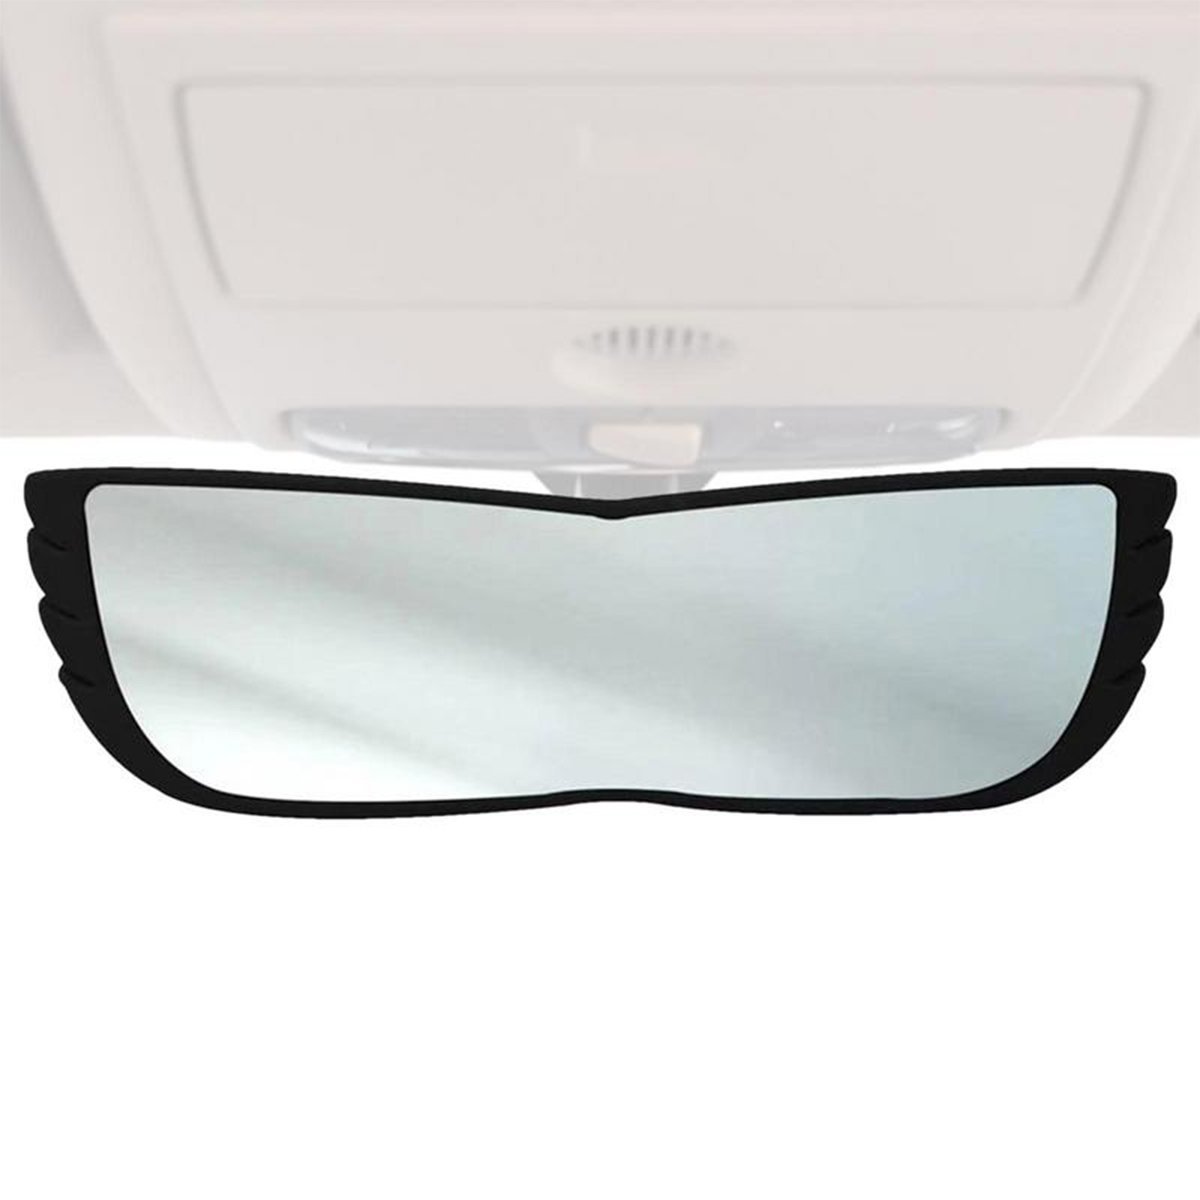 Espelho Retrovisor 160 Graus Carro Automotivo Caminhao Visao Ampla Panoramica Alta Visibilidade Prot - 9